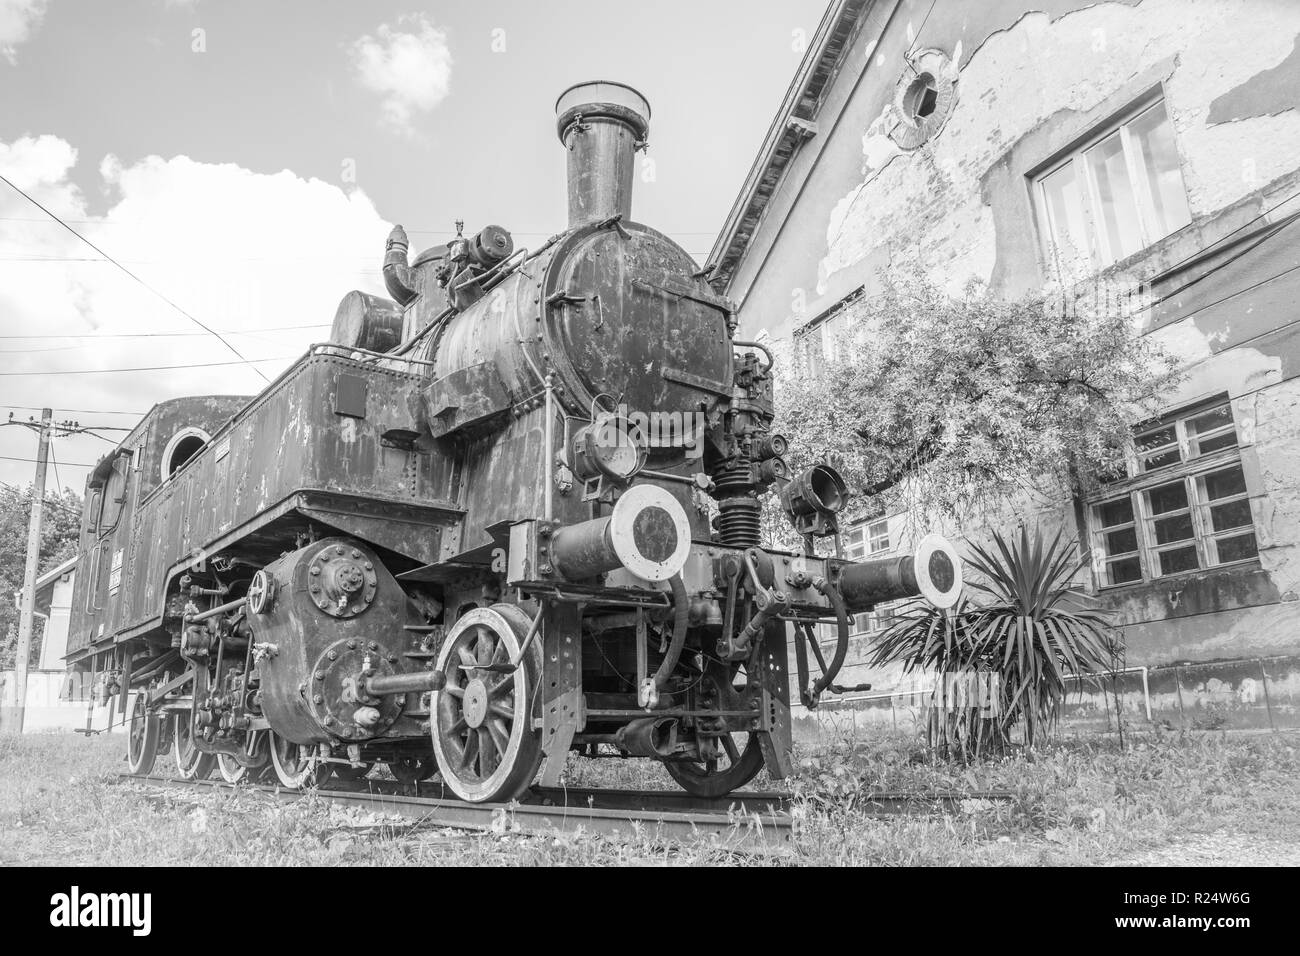 Treno jugoslavo nei pressi della vecchia stazione ferroviaria nella città di Vrsac Serbia Est Europa, in bianco e nero Foto Stock